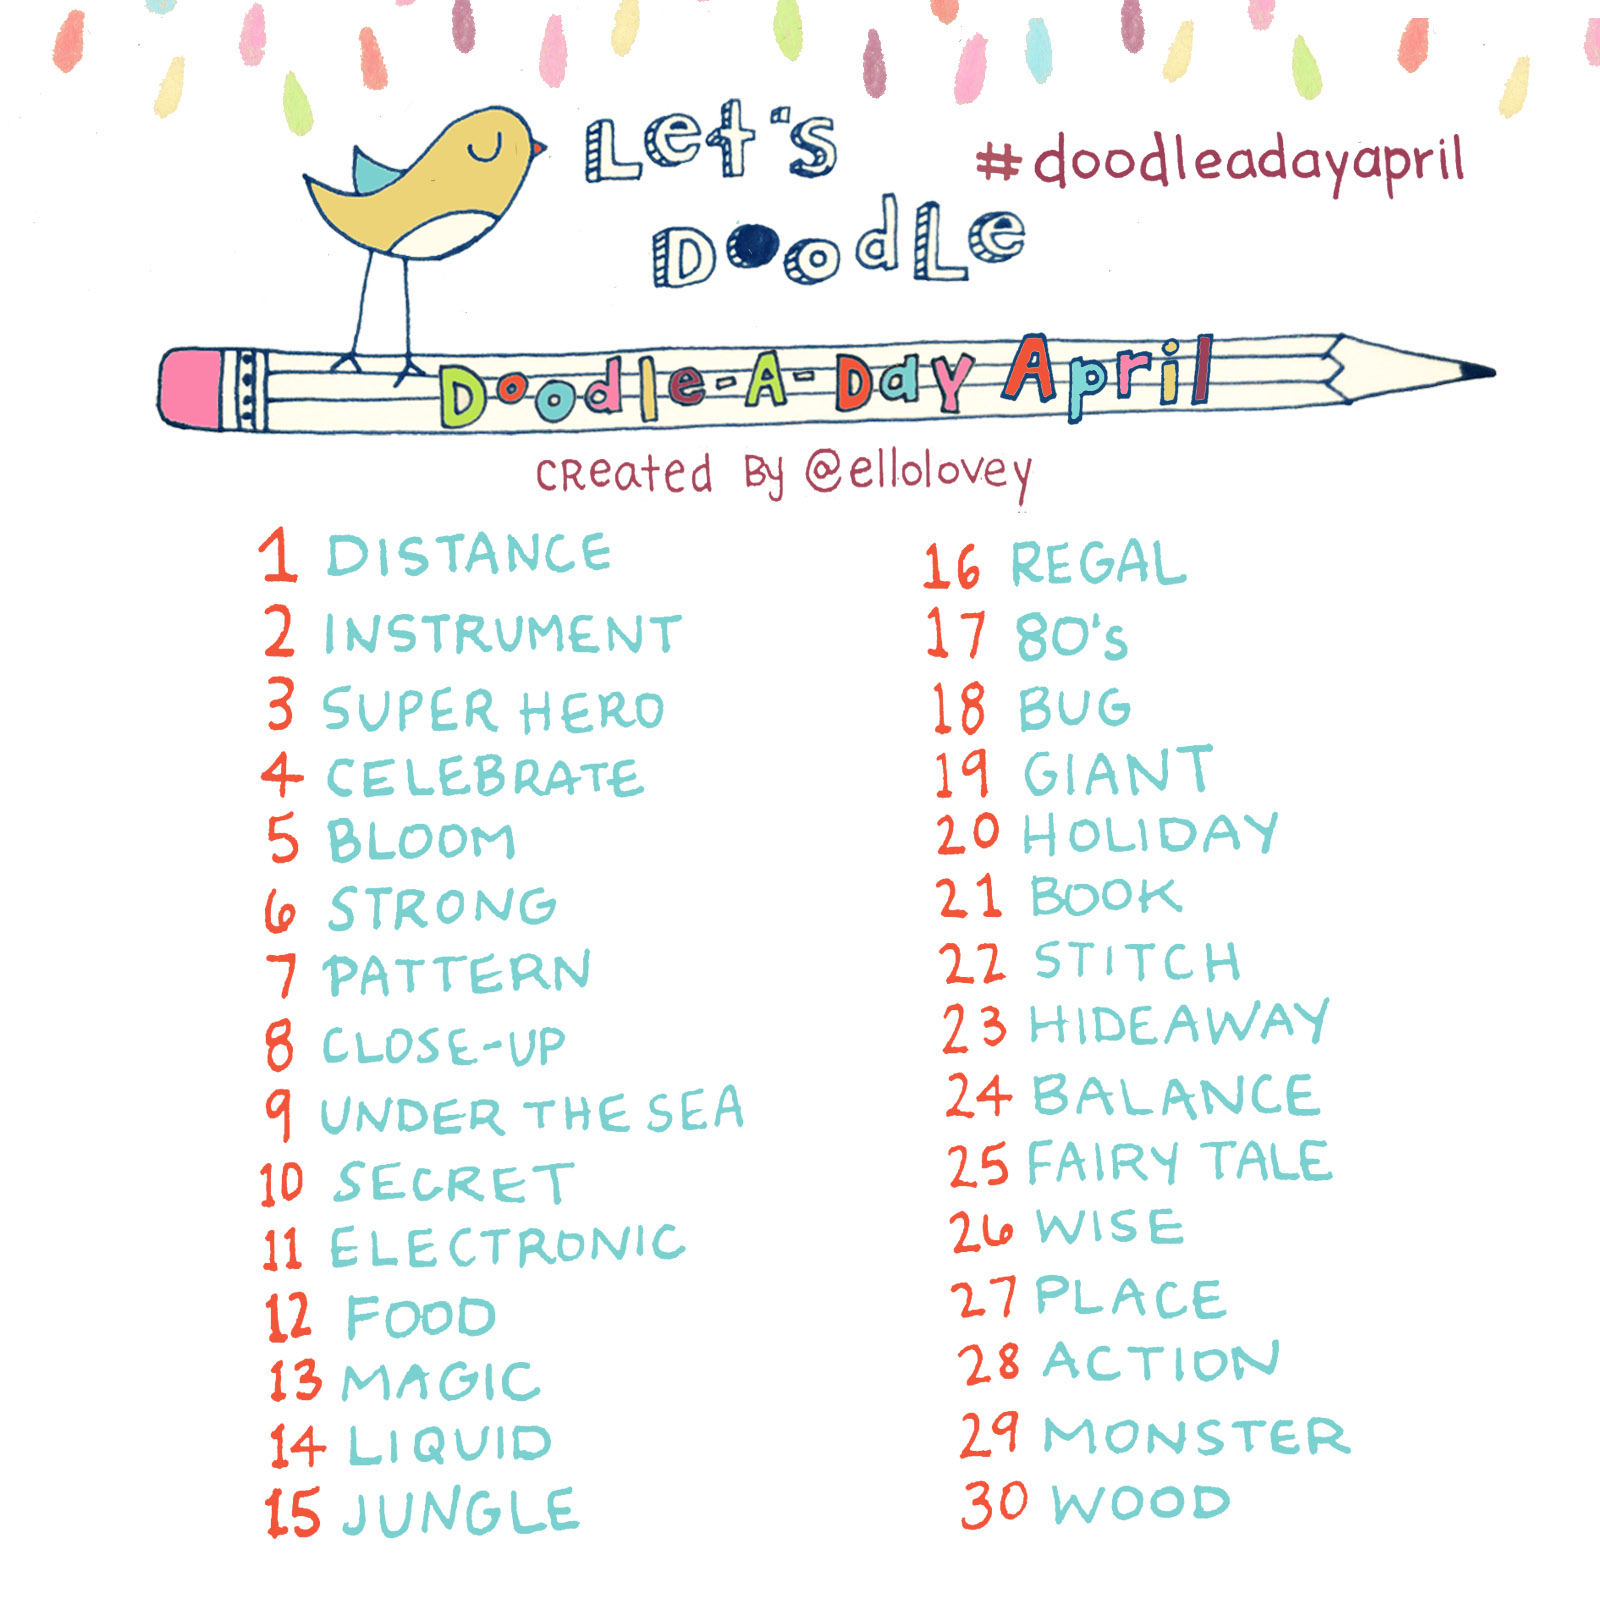 Eriq S Blog Happy Doodle Diary Anniversary Day